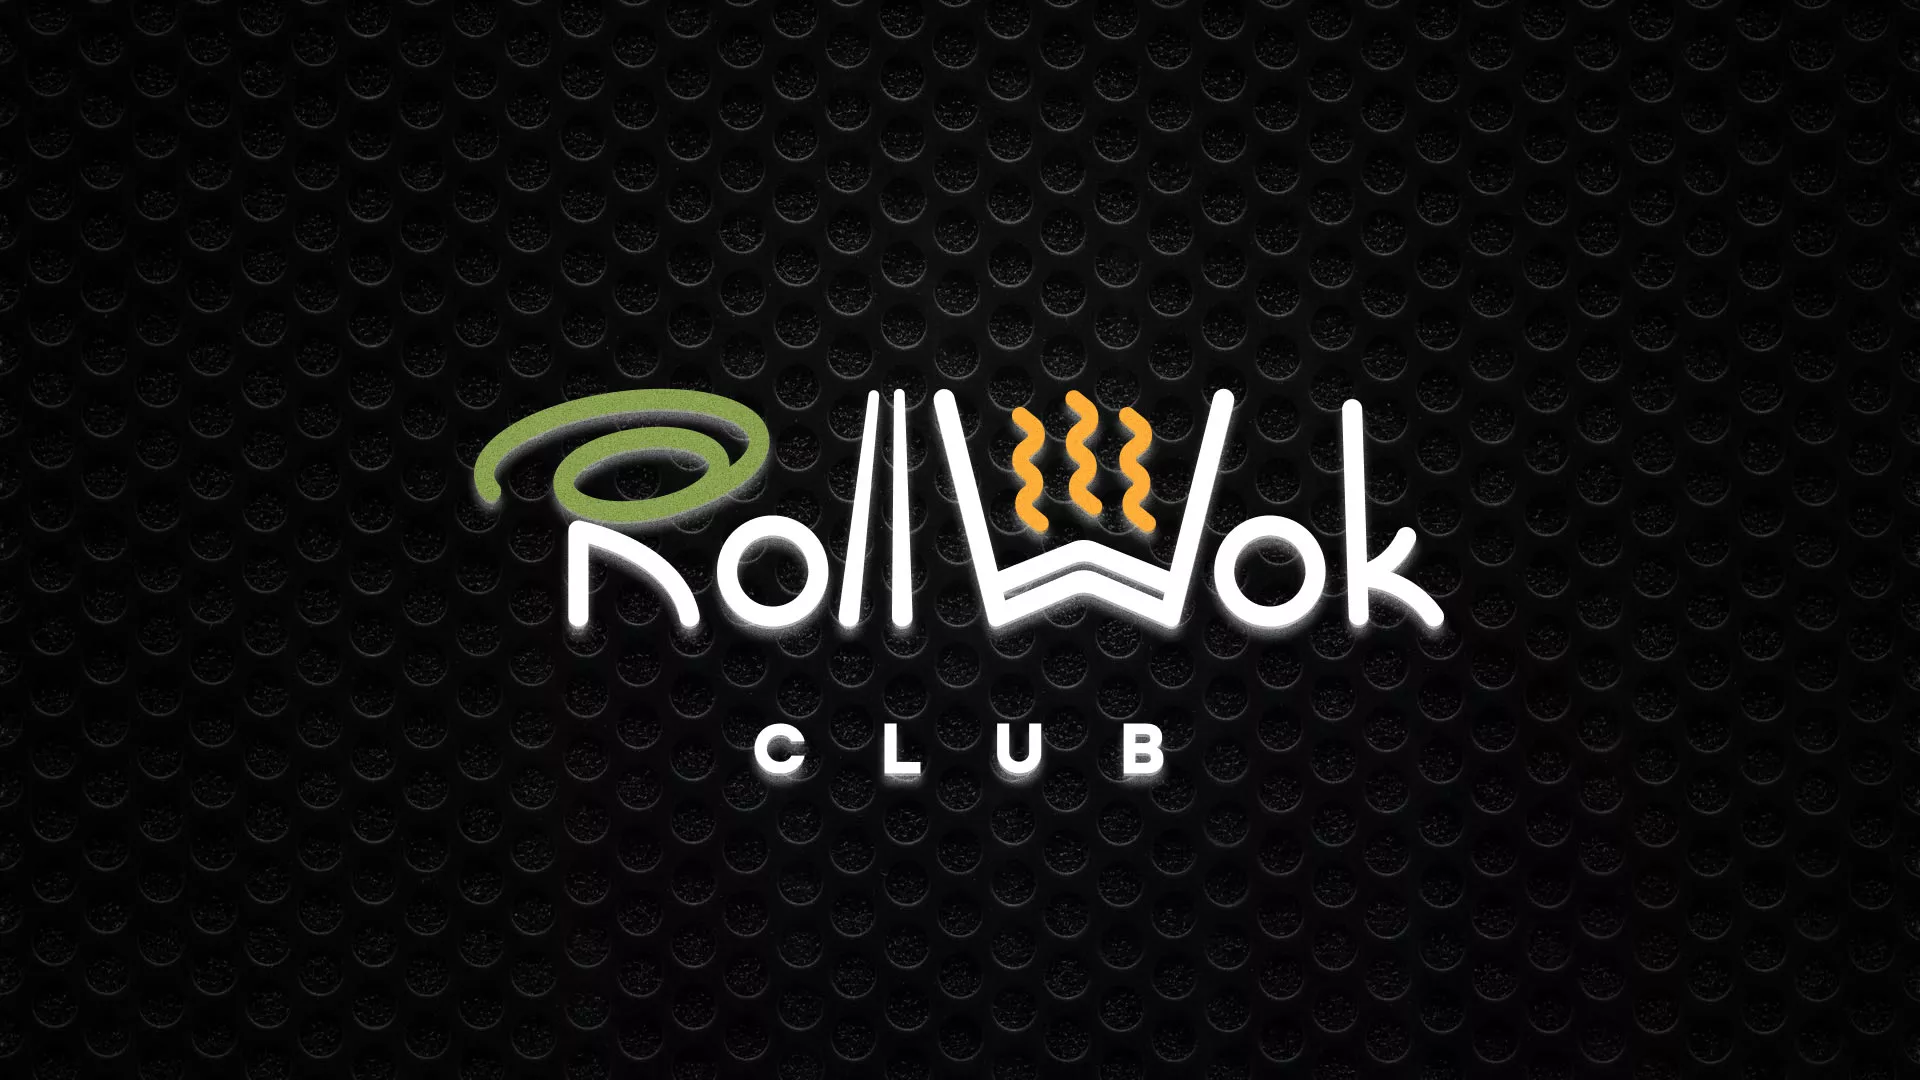 Брендирование торговых точек суши-бара «Roll Wok Club» в Княгинино